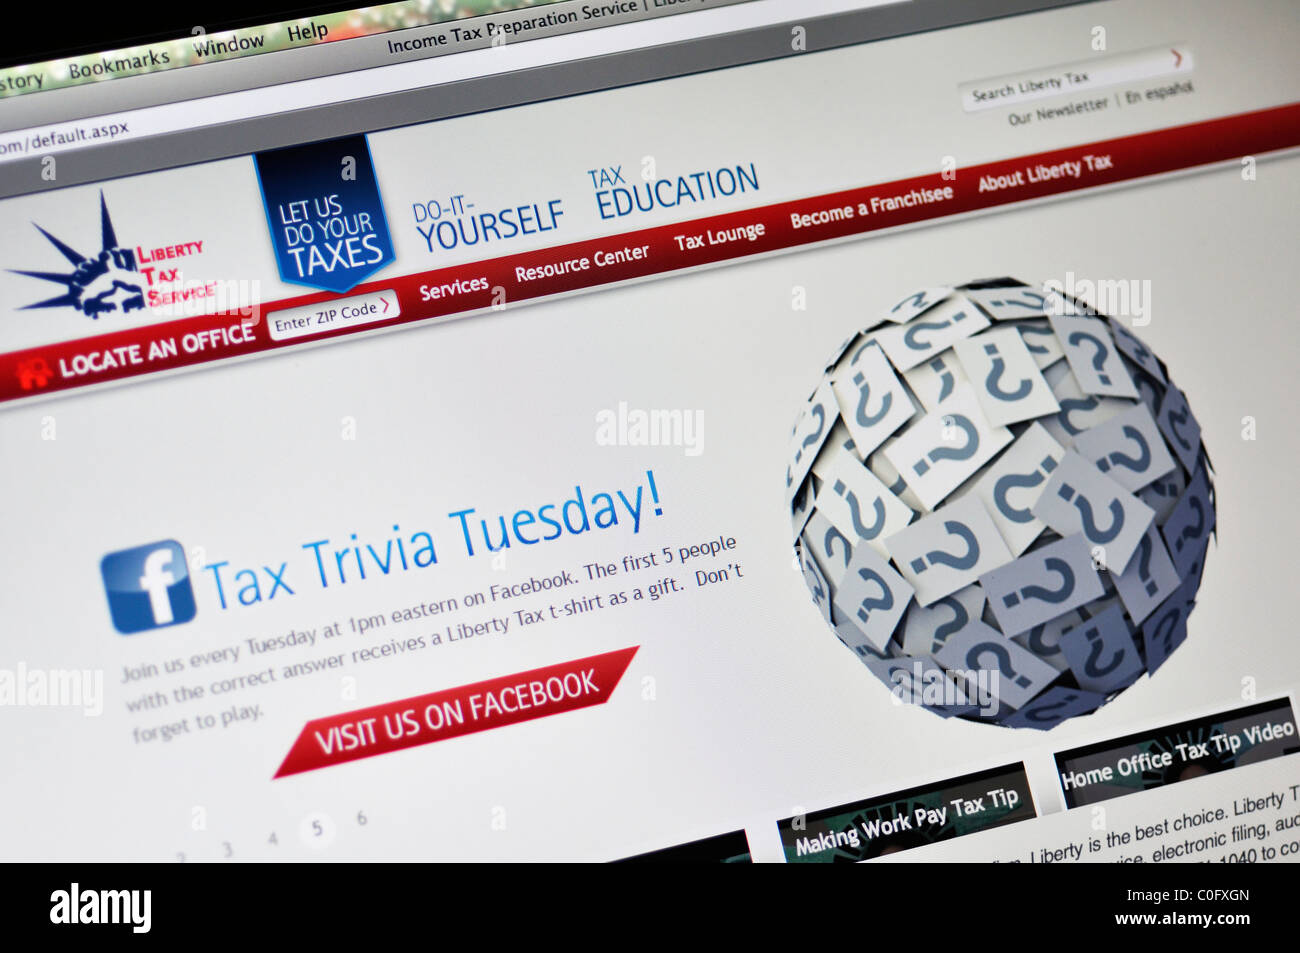 Liberty Tax Service - site web de préparation d'impôt sur le revenu Banque D'Images